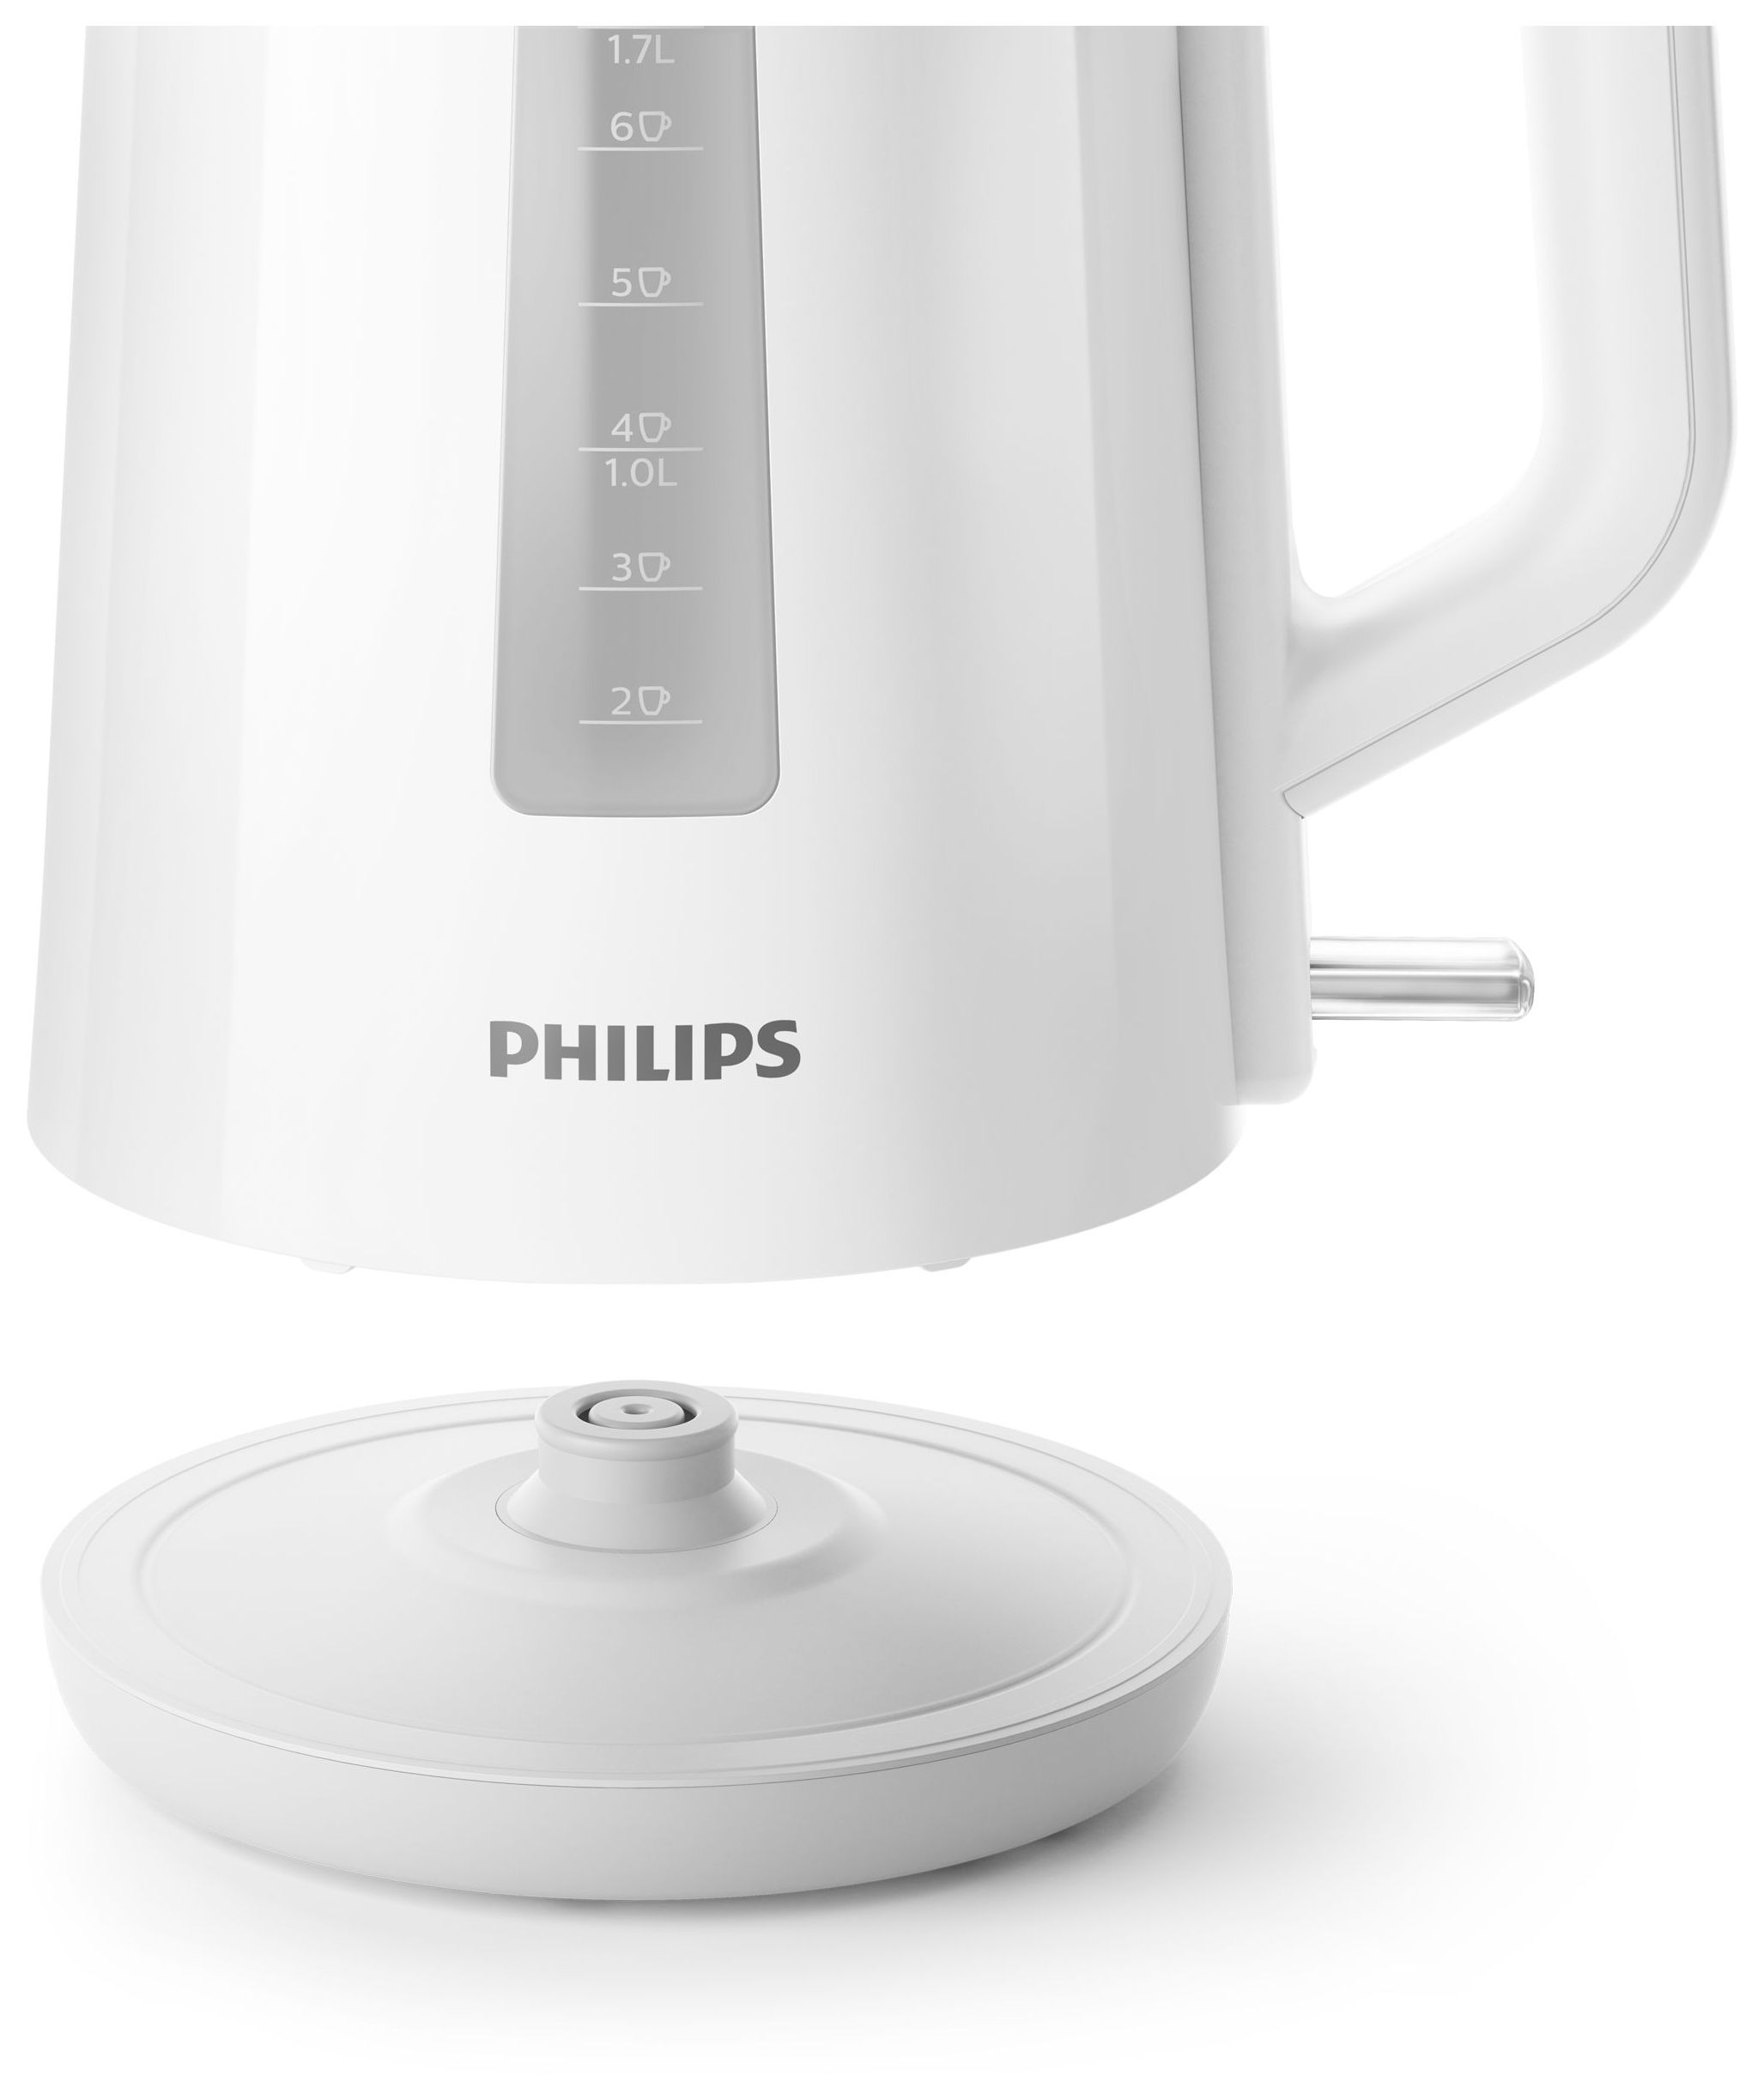 Philips 3000 series HD9318/00 1,7 l Wasserkocher 2200 W (Weiß) von expert  Technomarkt